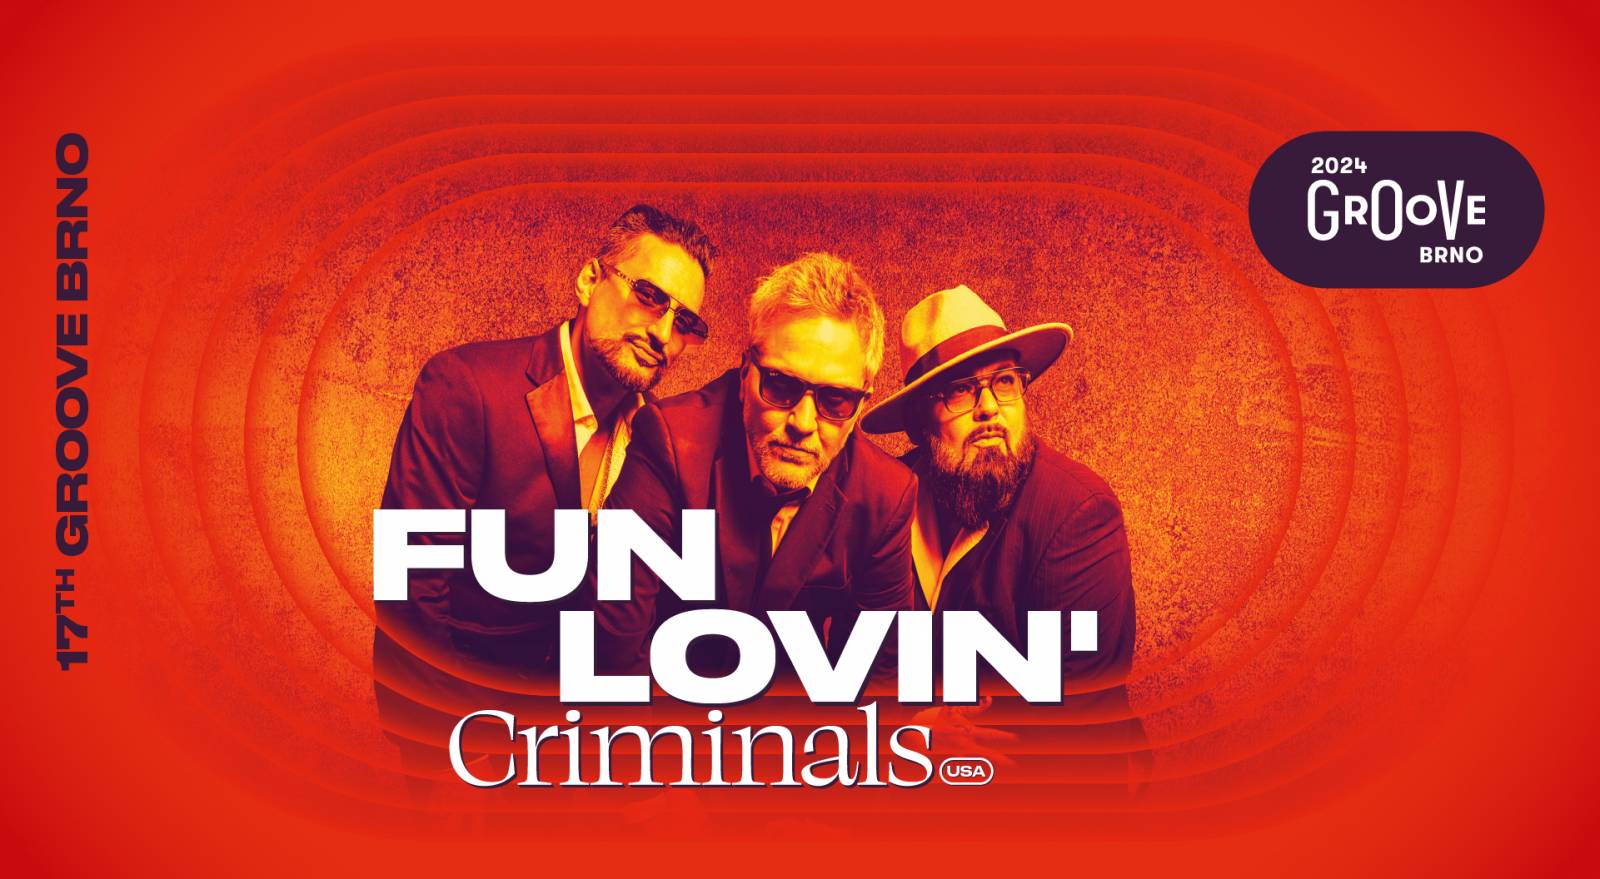 FUN LOVIN’ CRIMINALS (Groove Brno)